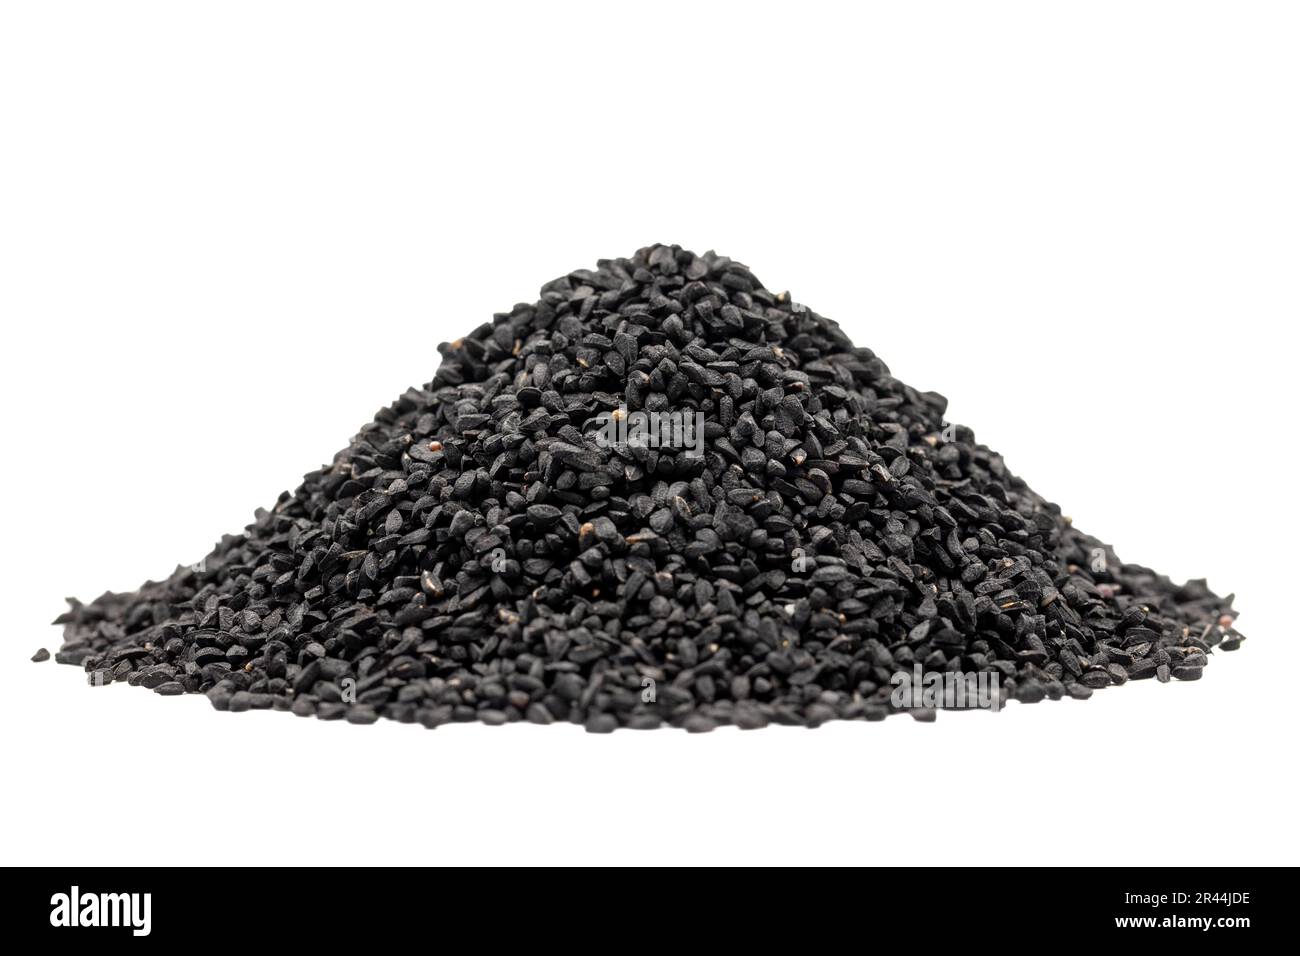 Cumino nero o nigella sativa isolato su sfondo bianco. Mucchio di semi di cumino nero. Kalonji, nigella, cumino nero Foto Stock